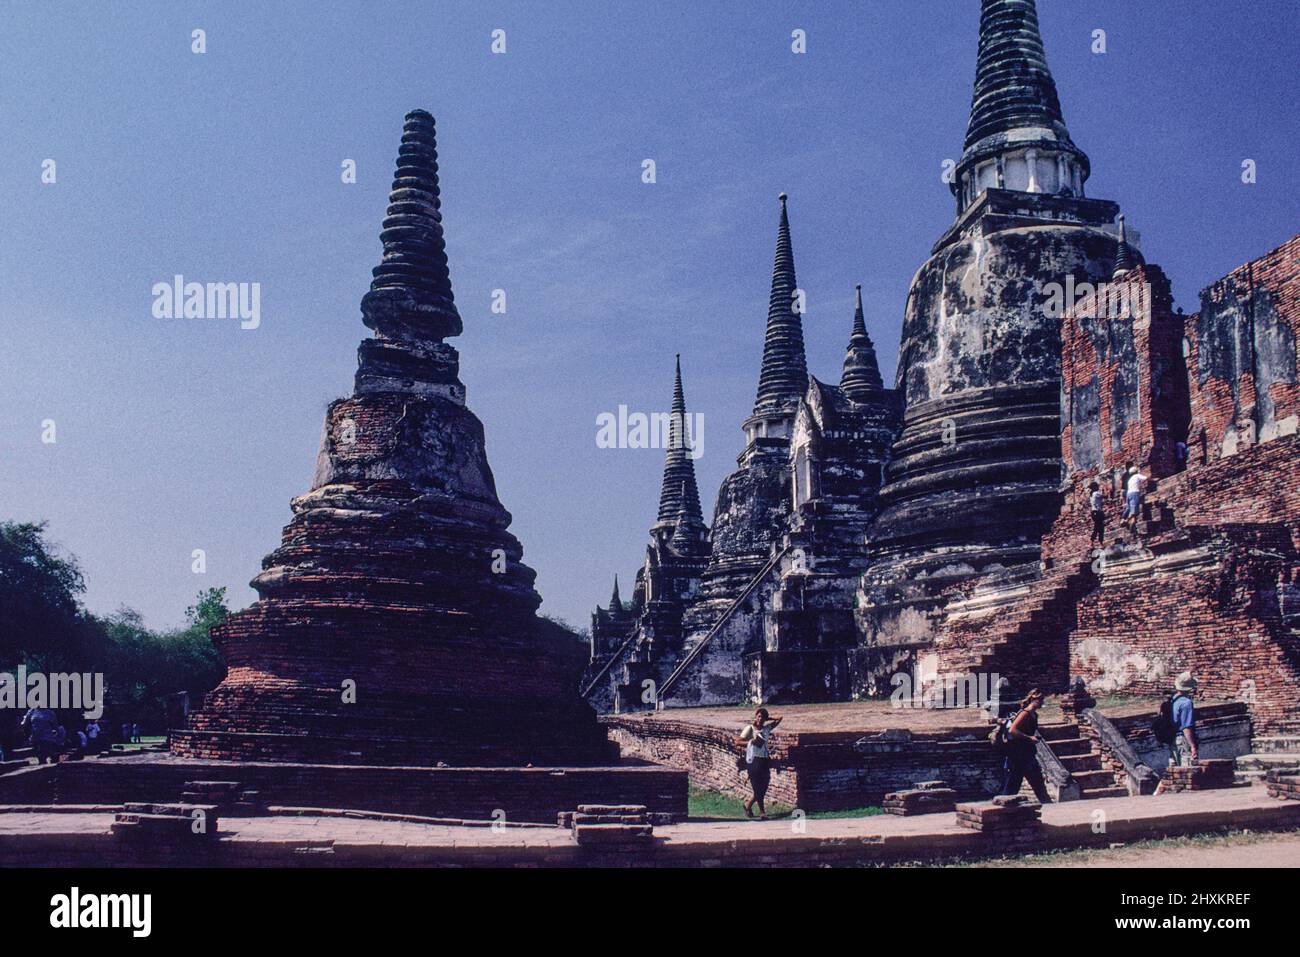 Autrefois recouvert d'or de feuilles, le Chedi du temple Wat Phra si Sanphet d'Ayutthaya est encore impressionnant. L'ancienne capitale de Siam a été conquise par une armée de Birmese en 1767, puis a été mise à sac et partiellement détruite. Il y a encore un sens de l'ancienne splendeur du grand temple. Banque D'Images